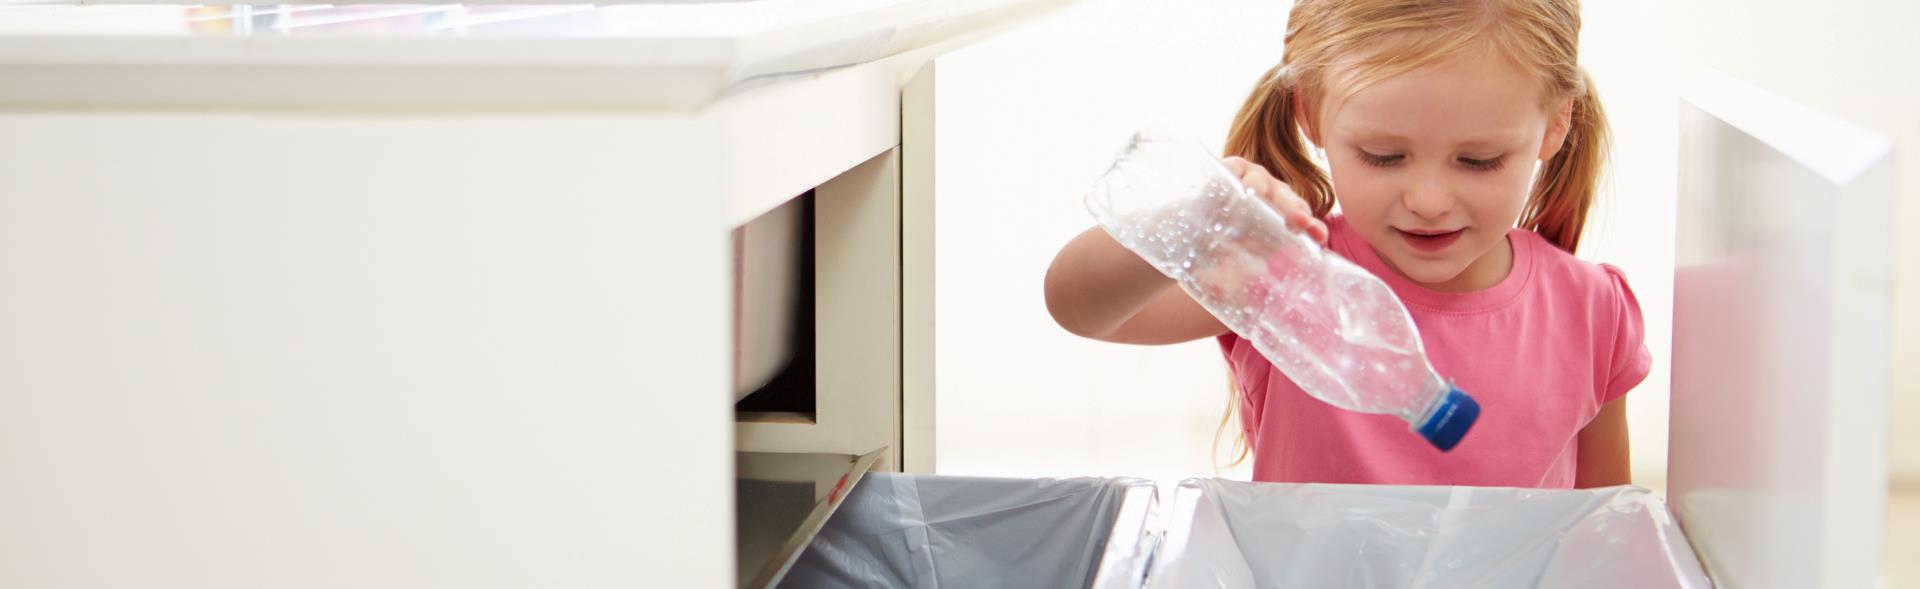 Pige sorterer en plastflaske til genbrug i affaldsspand i køkken